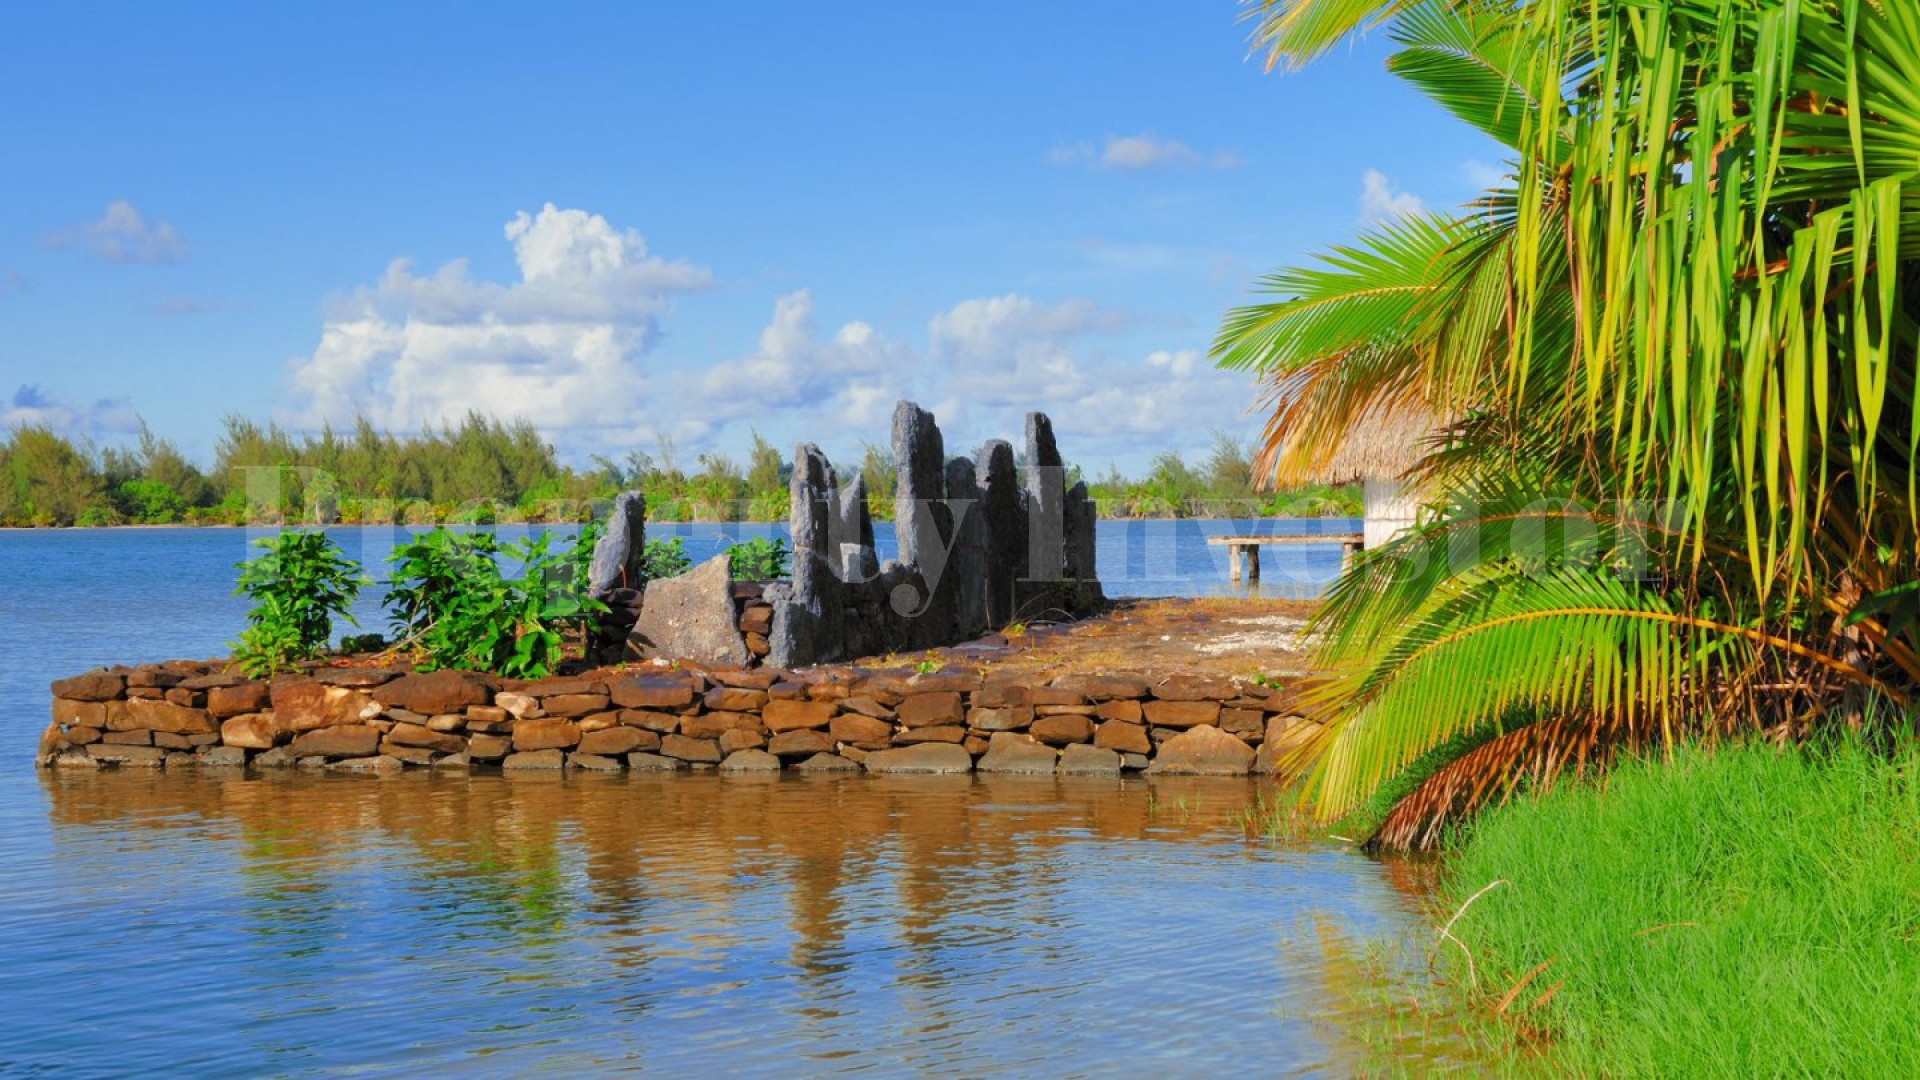 Продается частный остров 16,6 га в идеальном месте для развития в Хуахине, Французская Полинезия